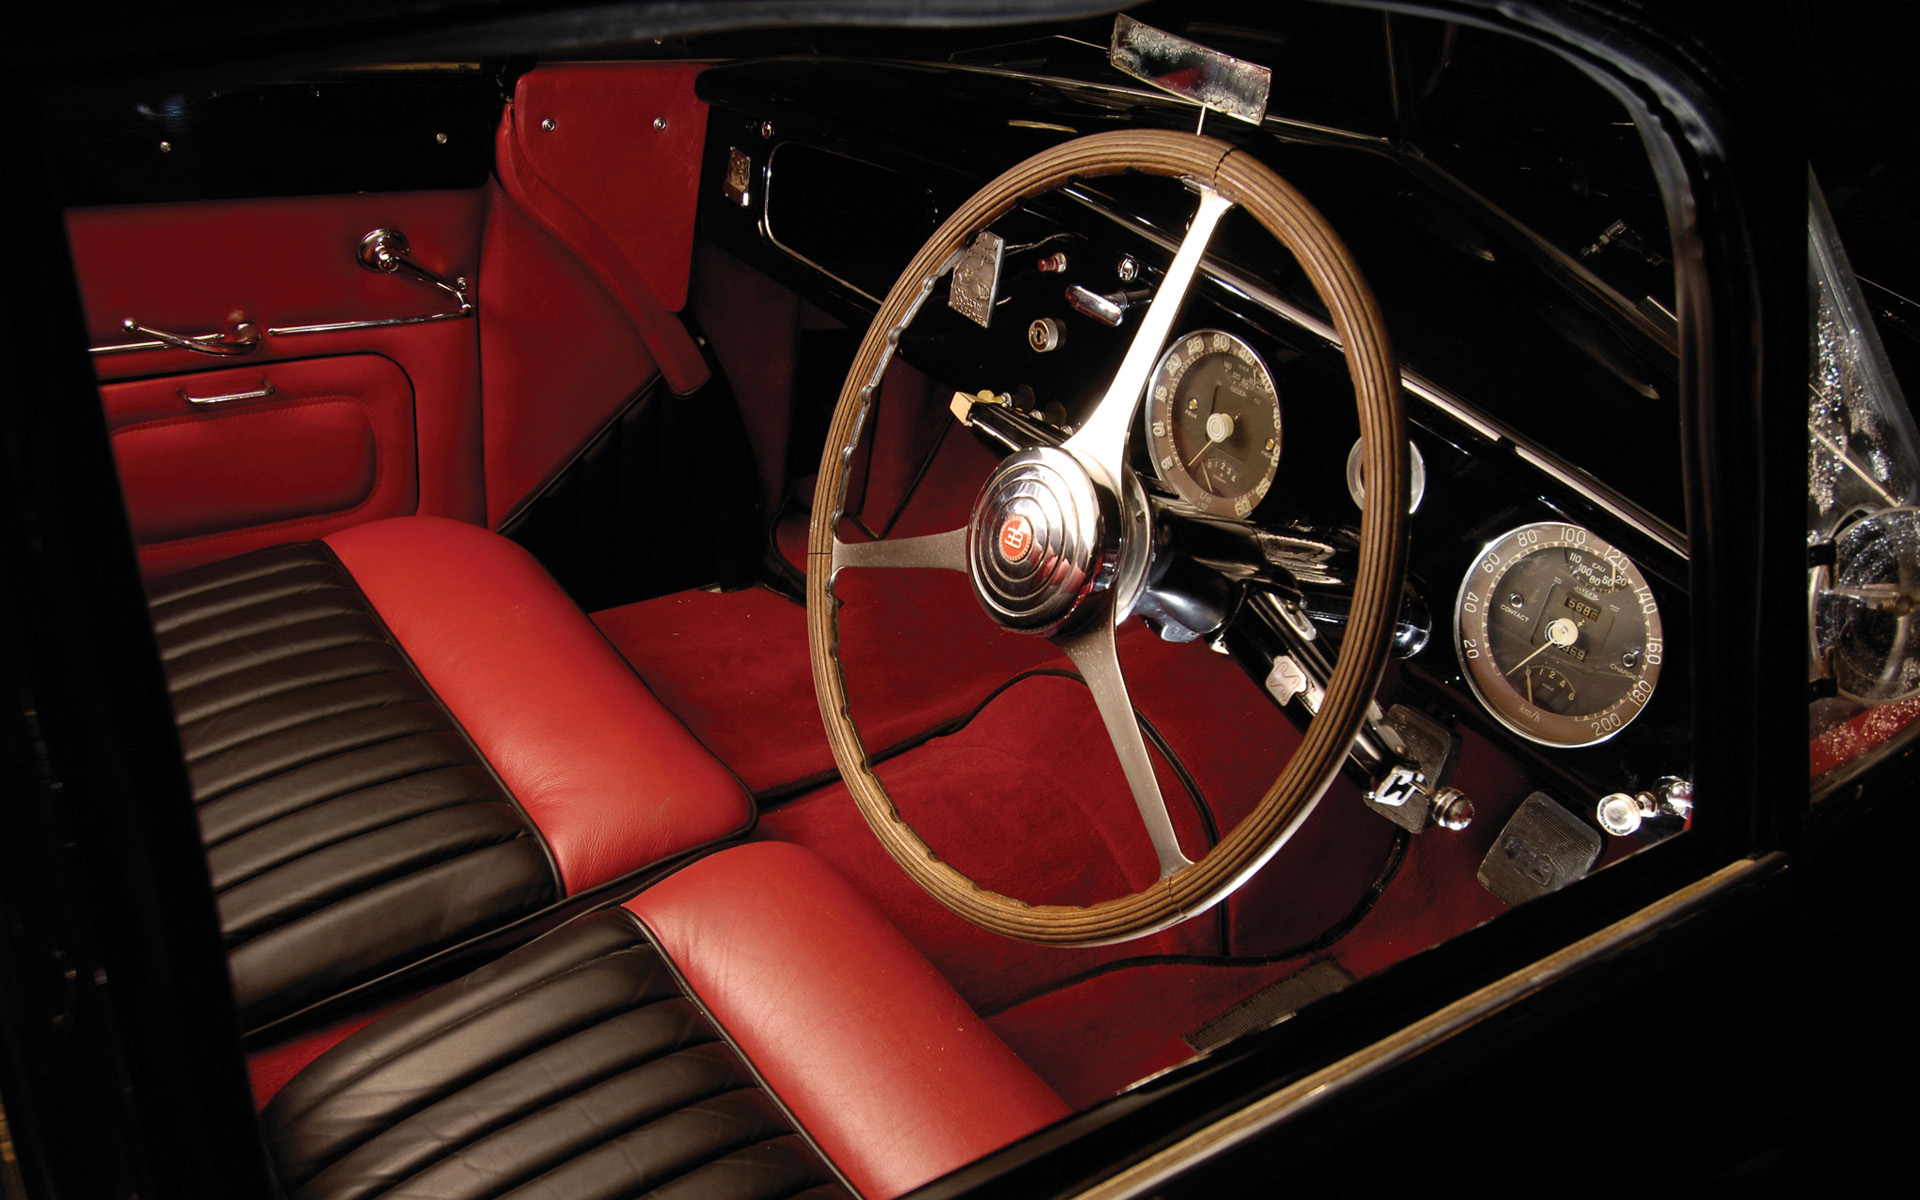  1951 Bugatti Type 101 Coupe Wallpaper.